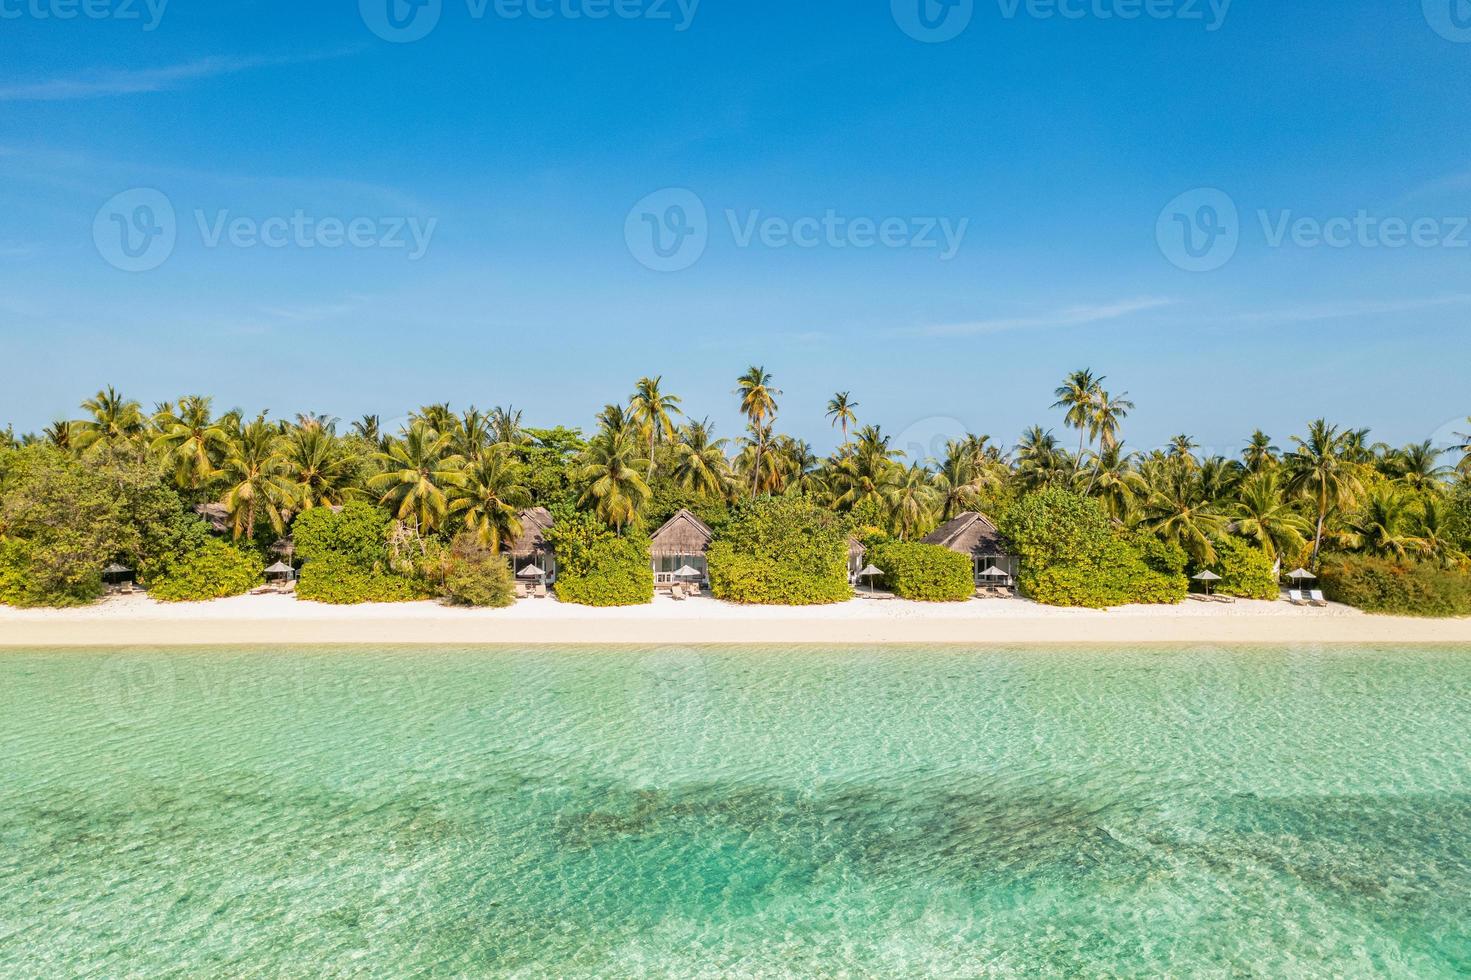 paisagem aérea perfeita, villas privadas de resort tropical de luxo. bela praia da ilha, palmeiras, céu ensolarado. incrível vista de olhos de pássaro nas maldivas, costa paradisíaca. turismo exótico, relaxar natureza mar foto